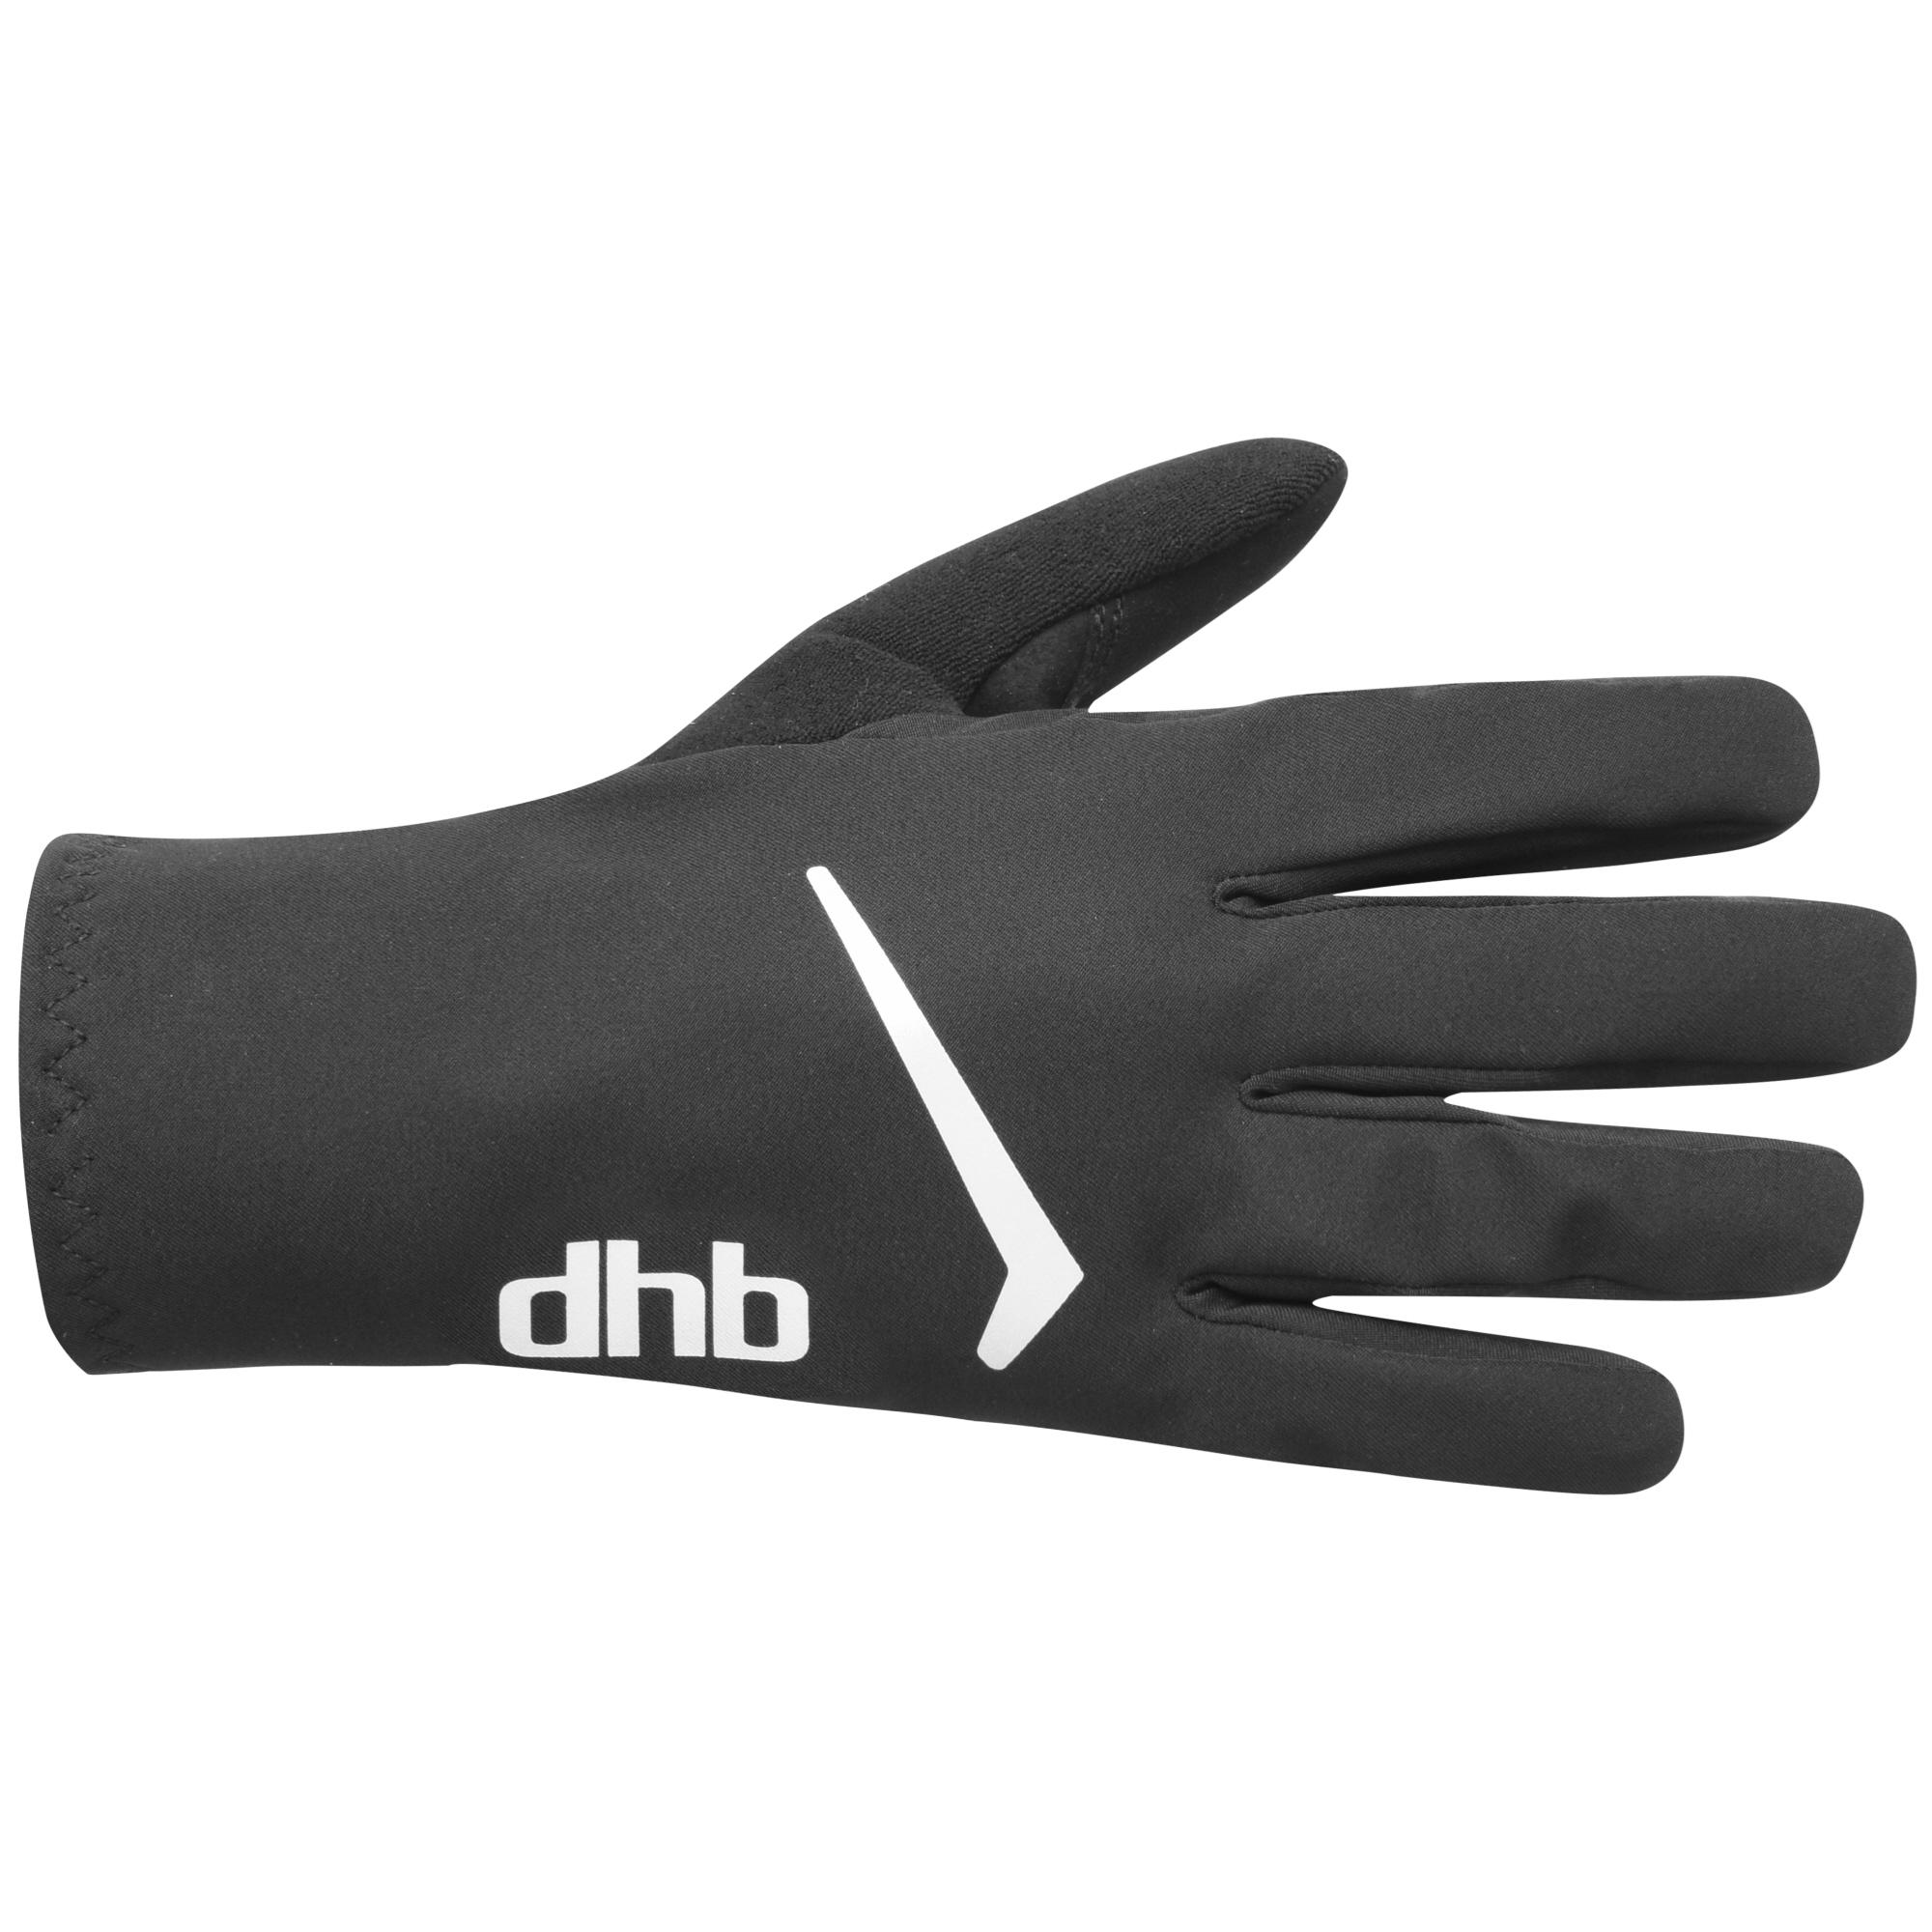 Dhb Waterproof Gloves - Black